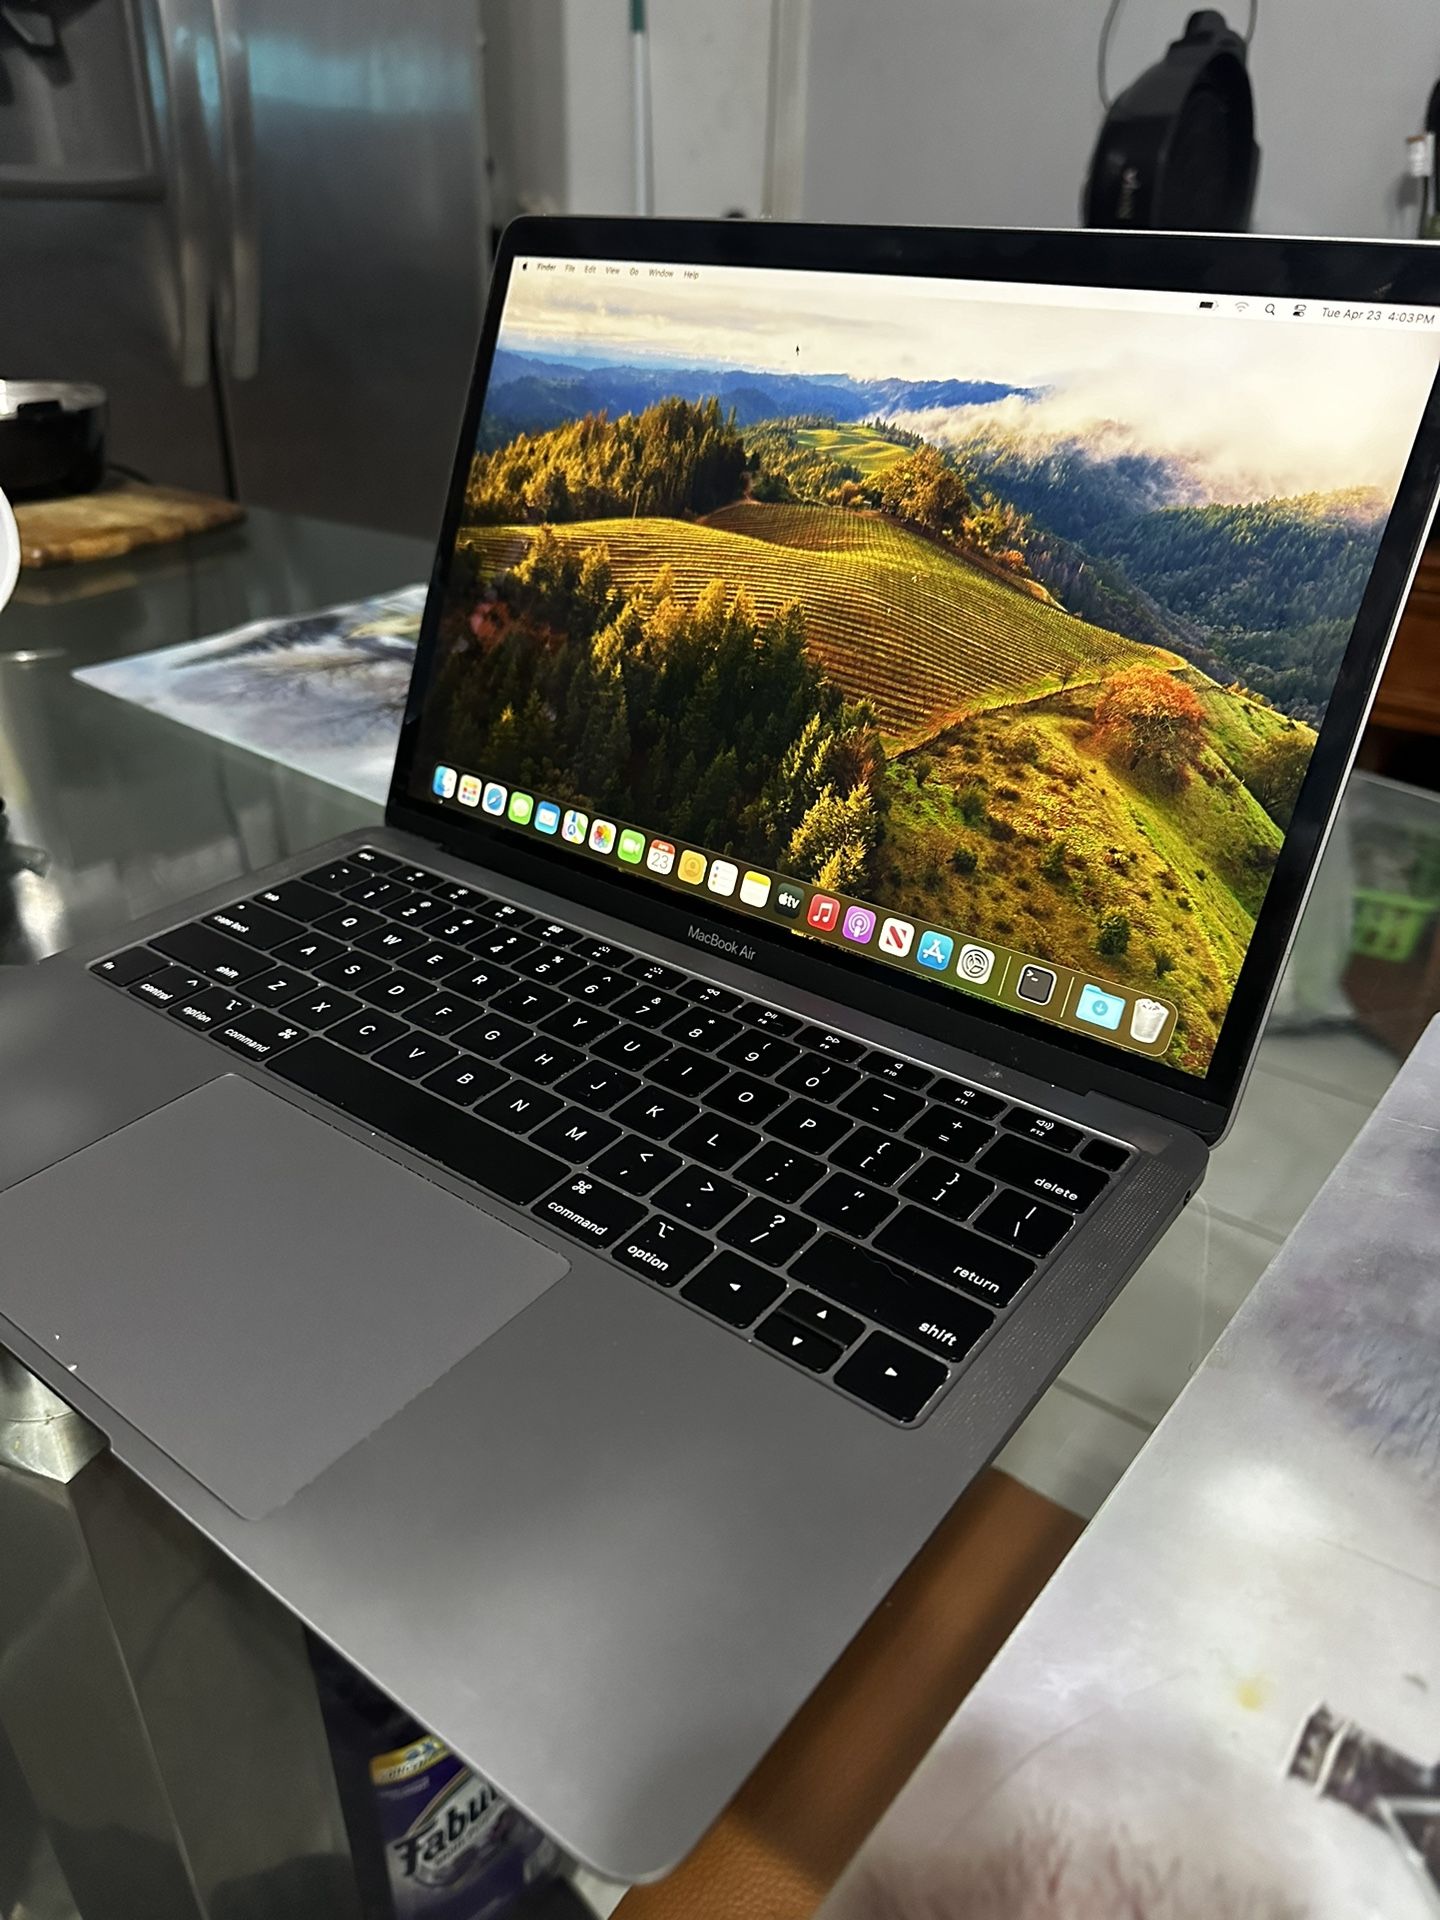 MacBook Air 2018 Core i5 8gb Ram Like Newww